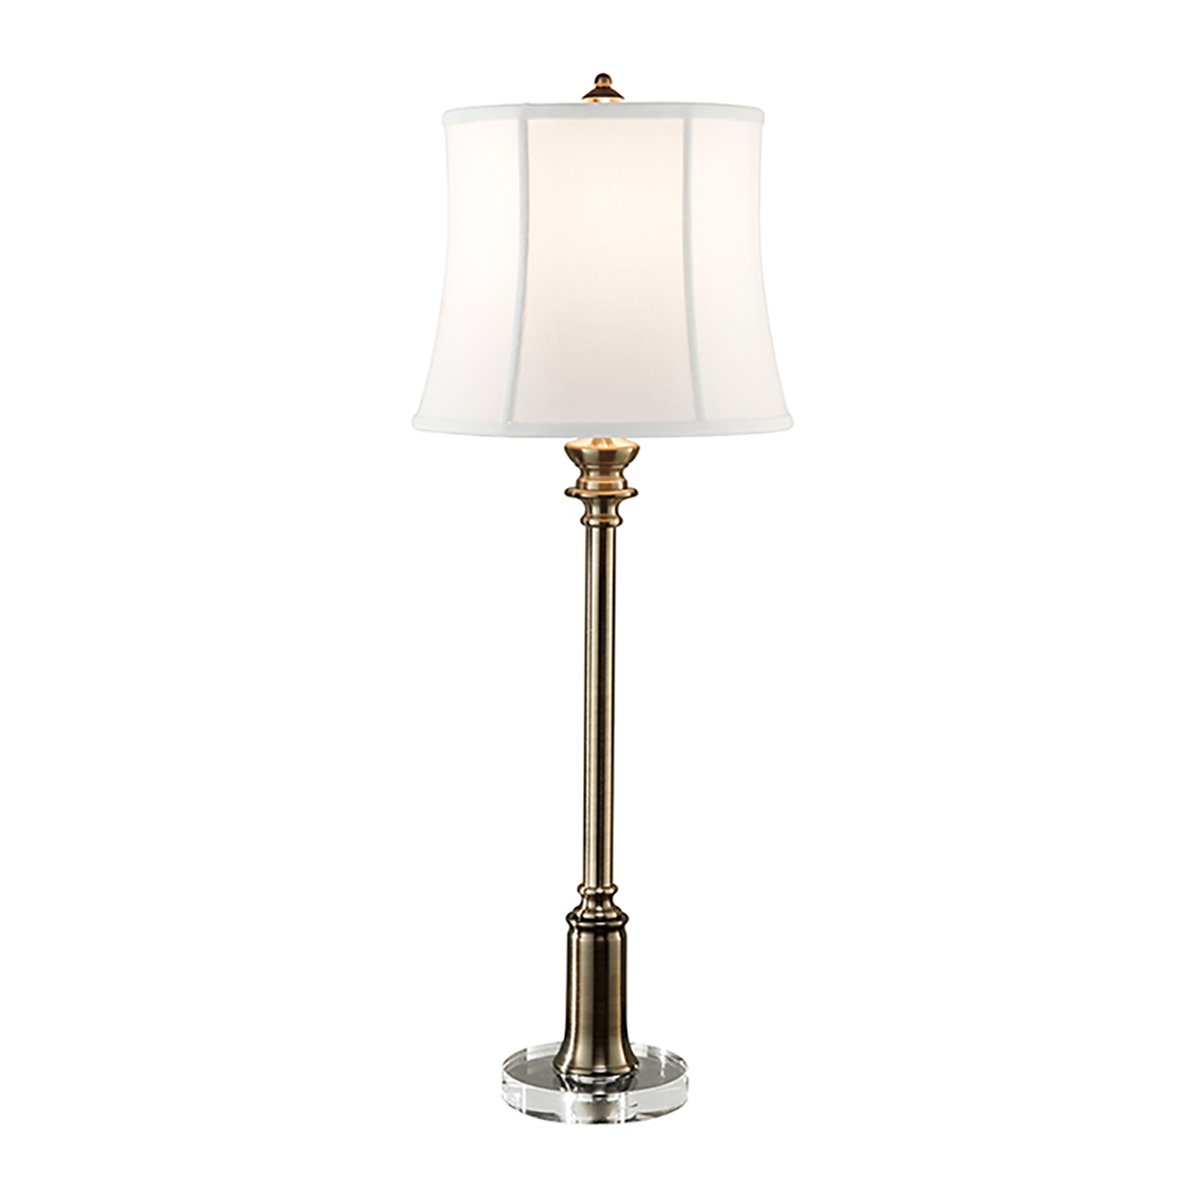 Настольная лампа FE-STATEROOM-BL-BB, Настольные лампы Классический | Металл | Латунь | Прихожая, спальня, гостиная, столовая.